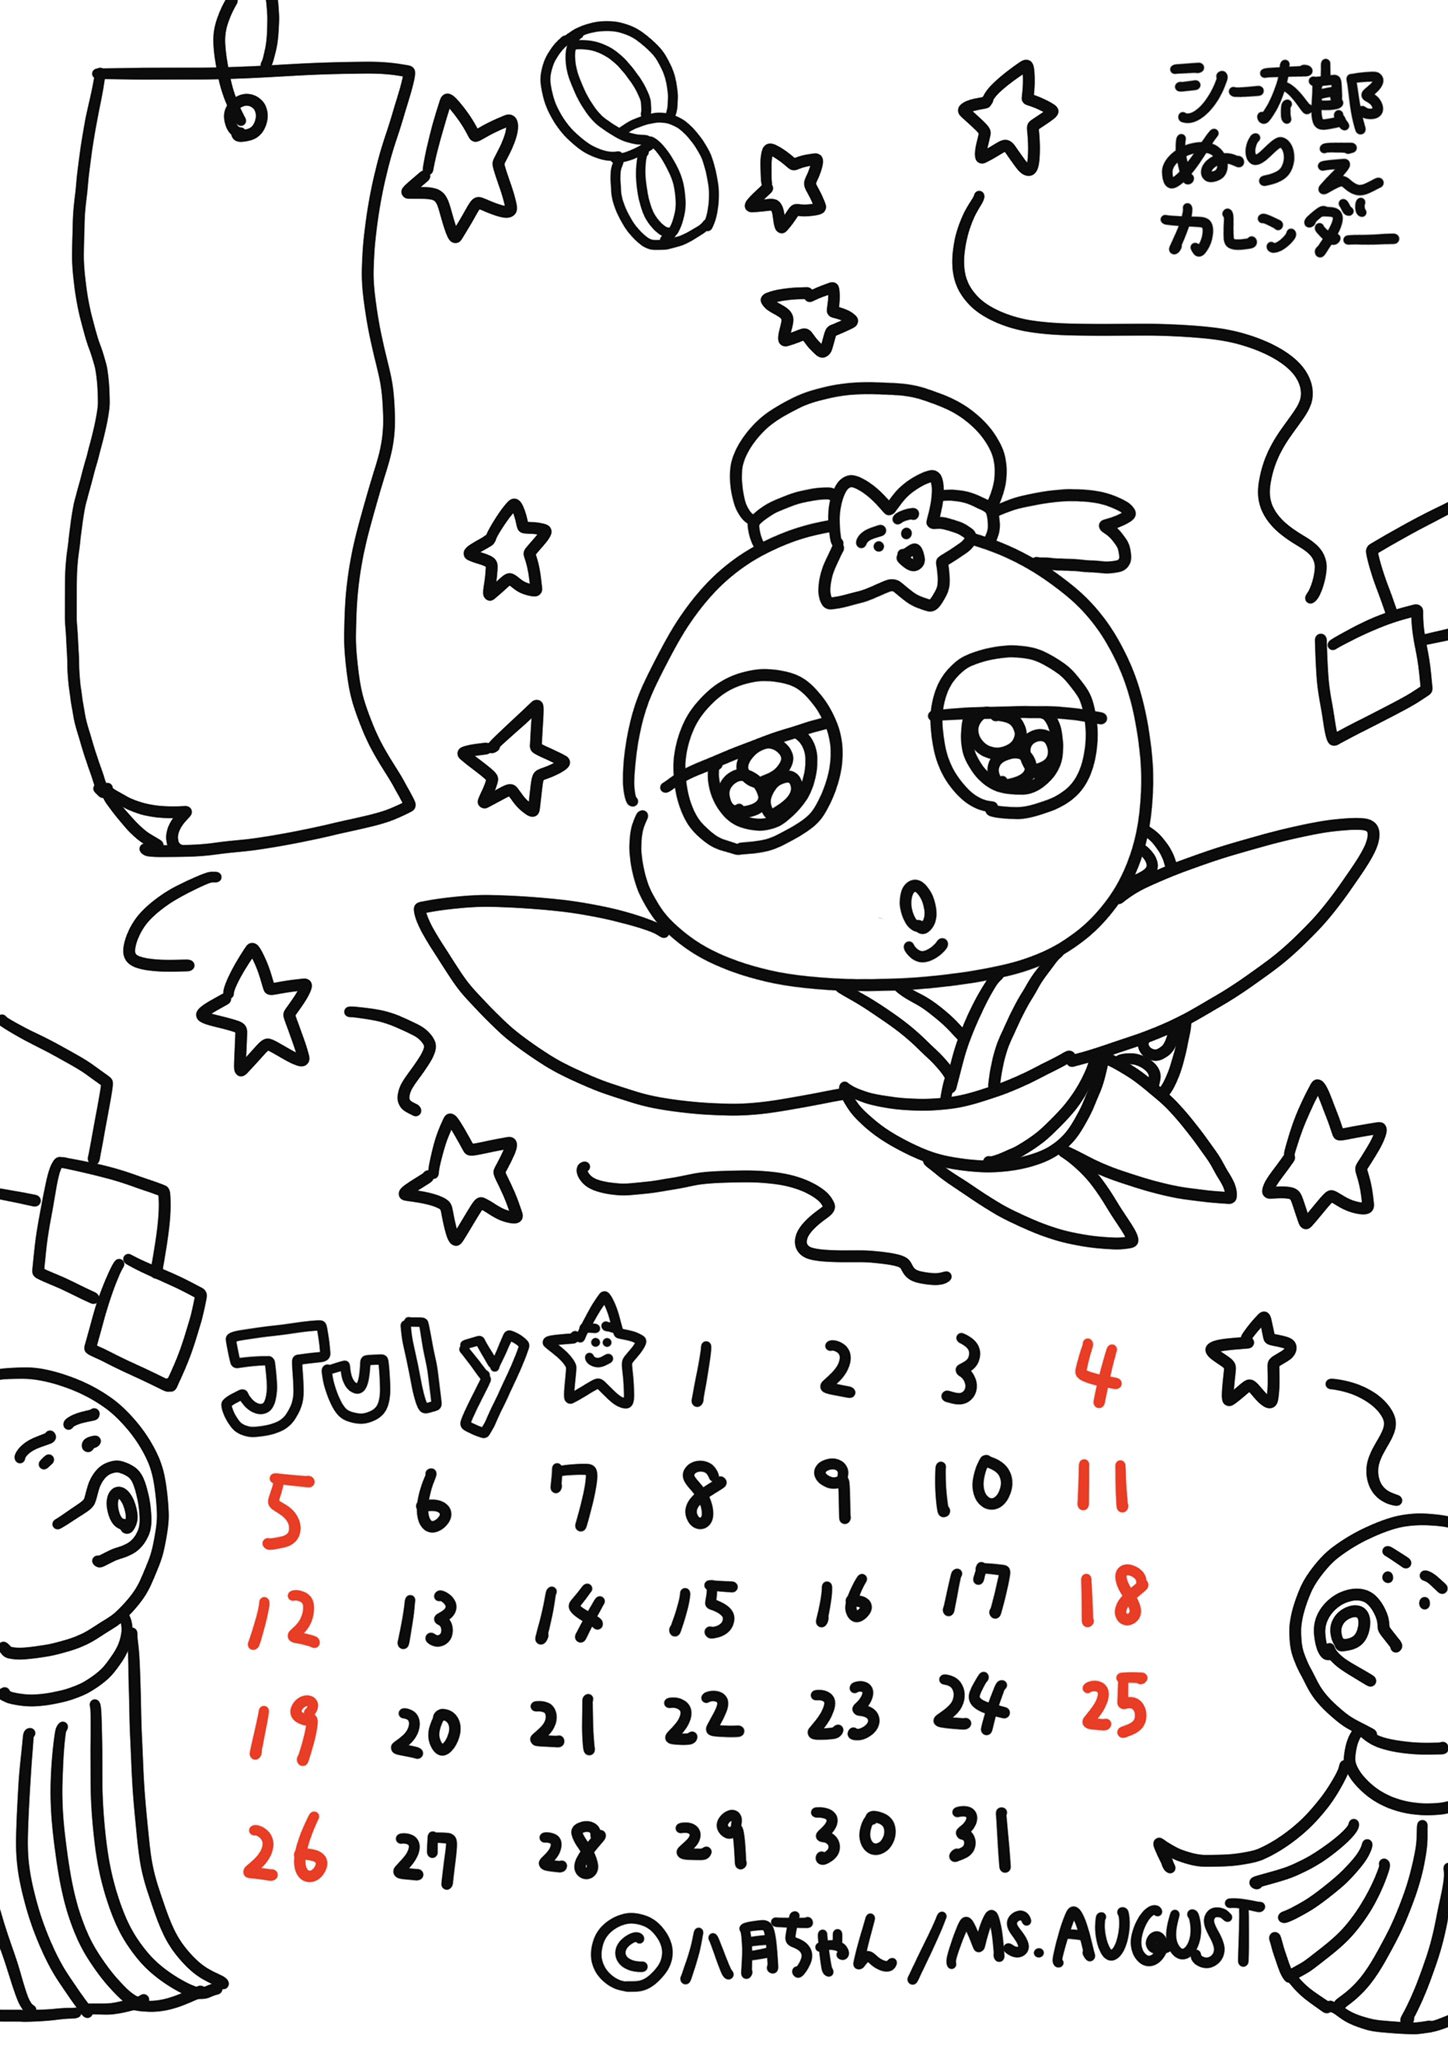 八月ちゃん 8 28西永福jam もう7月もちょっと始まりましたが 今月もシー太郎ぬりえカレンダーを作ったよー 今月は七夕ということで ひこぼシー太郎 左の大きい短冊には みんなのねがいごとを書けるコーナーにしました よかったらぬりえしてねー